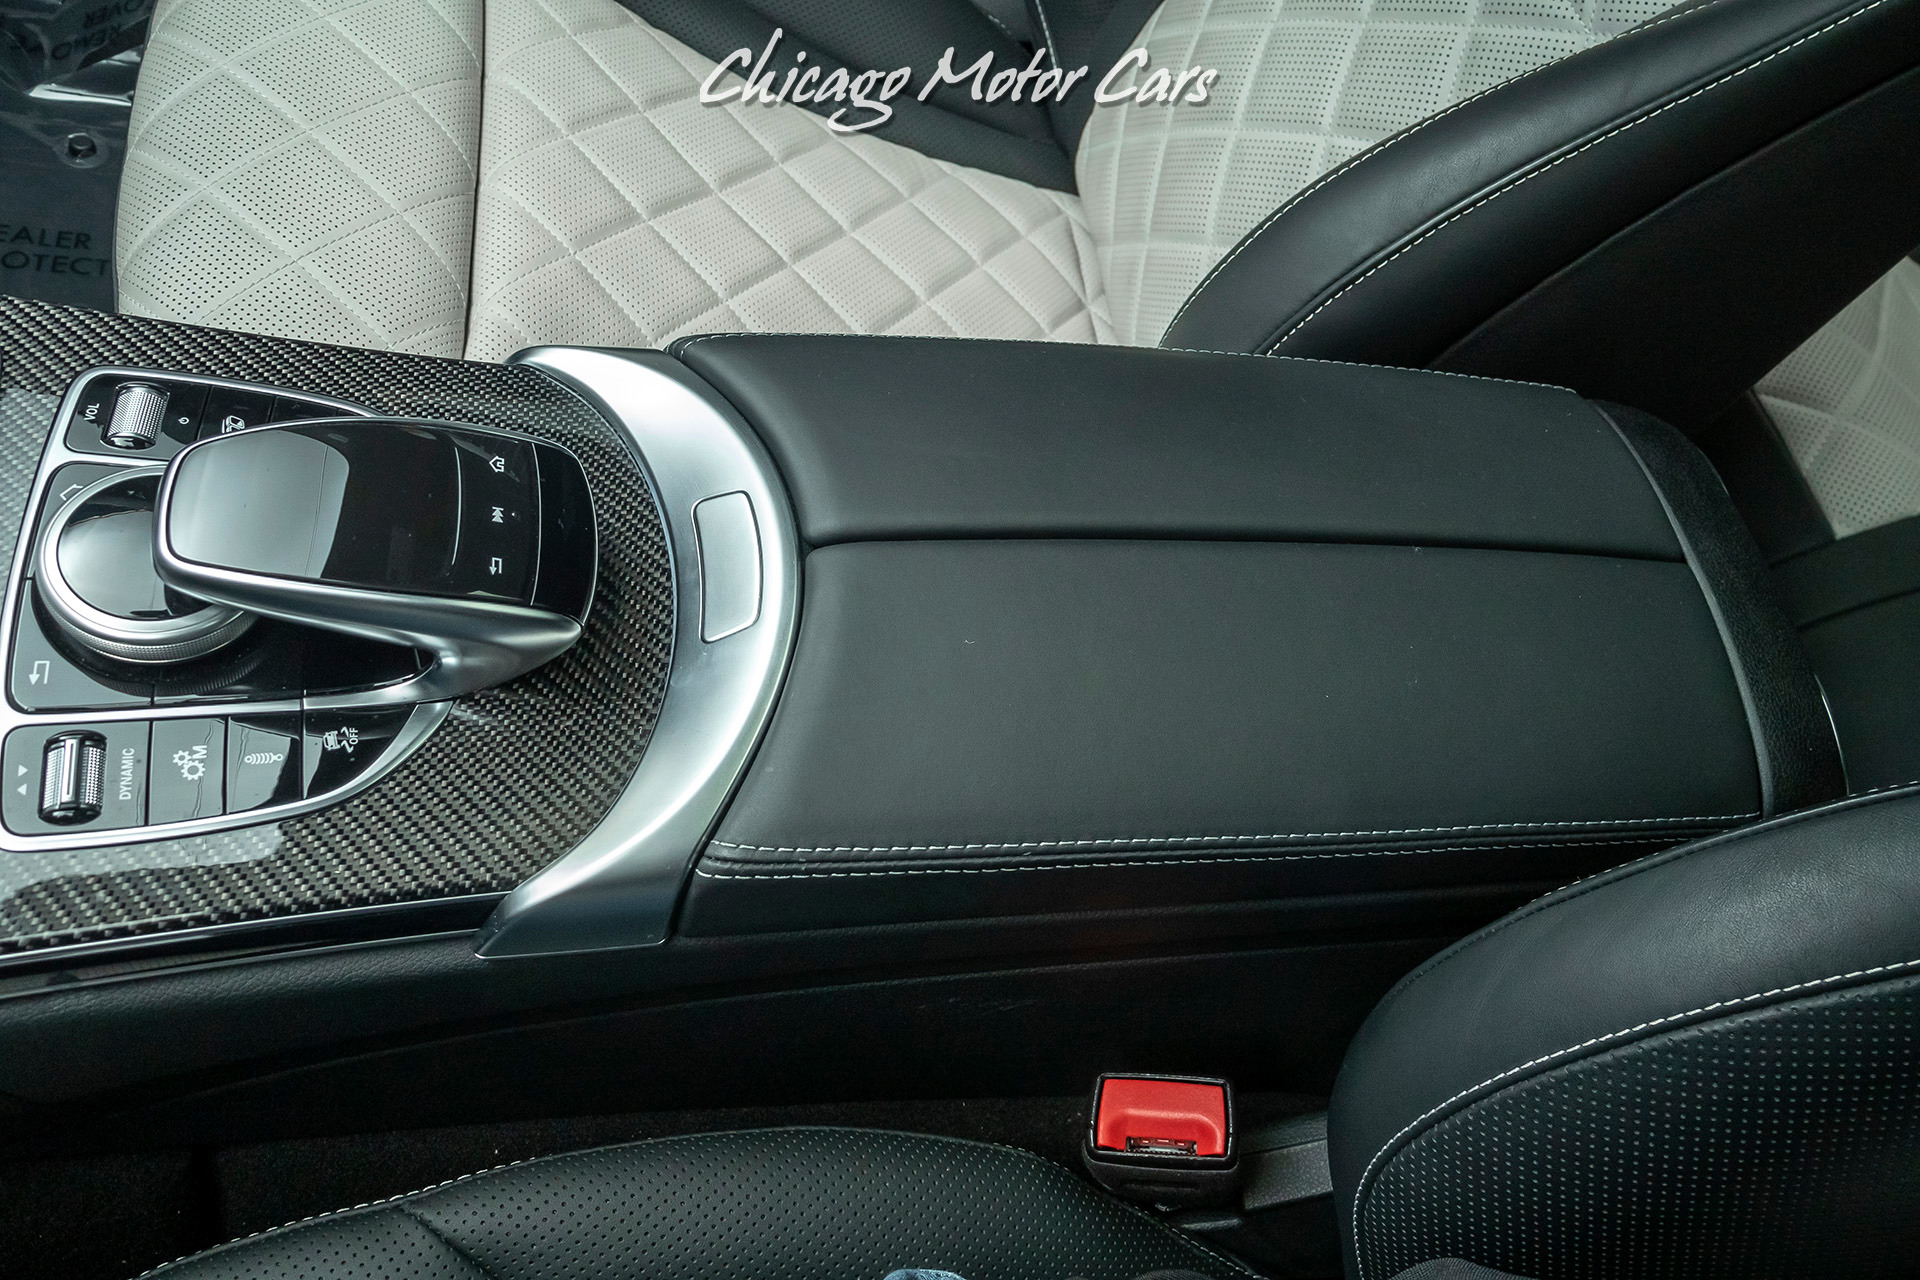 Used-2019-Mercedes-Benz-C63-S-AMG-Sedan-MSRP-92k-AMG-Carbon-Fiber-PKG-Huge-Option-List